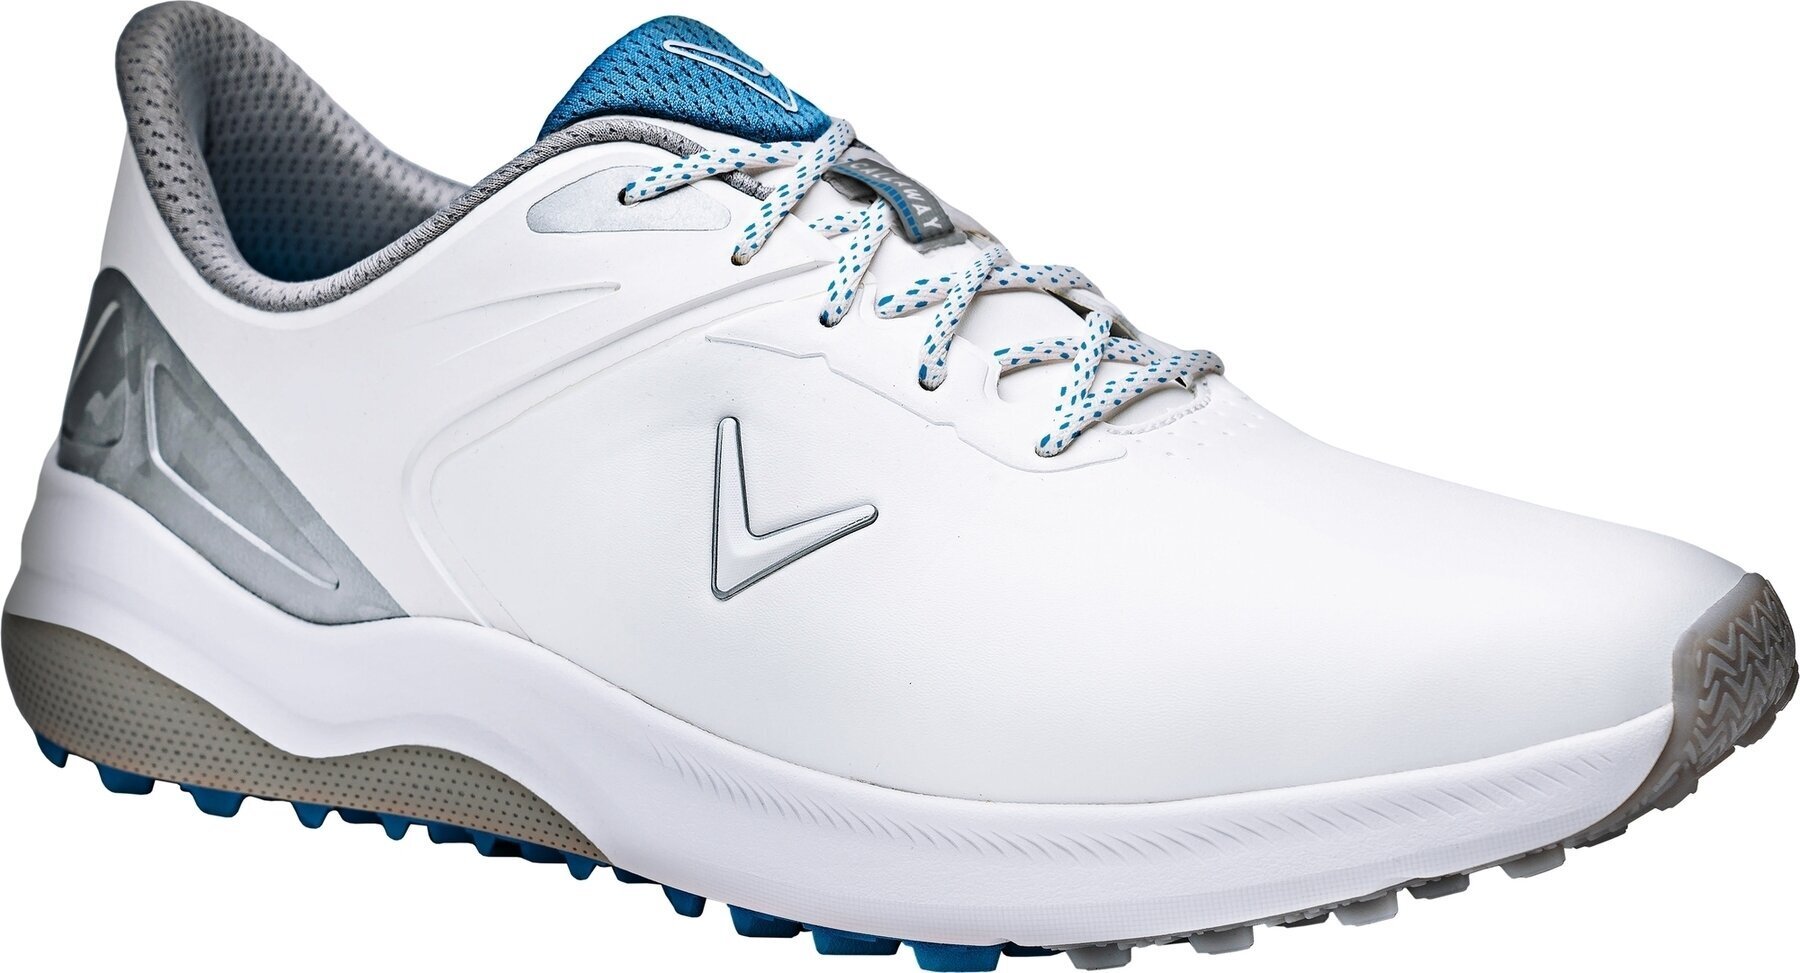 Ανδρικό Παπούτσι για Γκολφ Callaway Lazer Mens Golf Shoes White/Silver 44,5